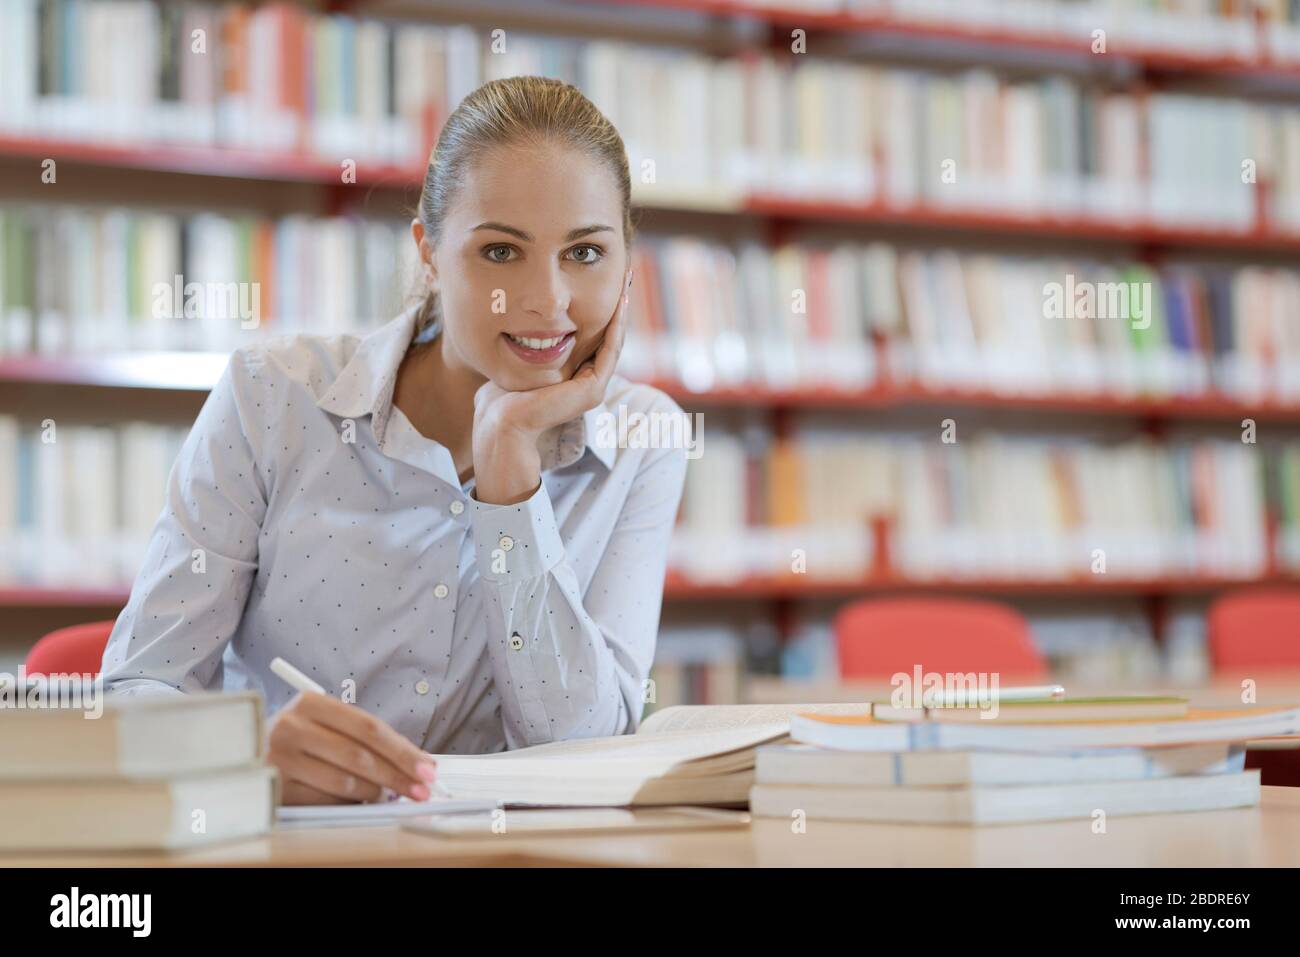 Lächelnd Studentin in der Bibliothek, sitzt sie am Schreibtisch und Studium, Ausbildung und Selbstverbesserung Konzept Stockfoto